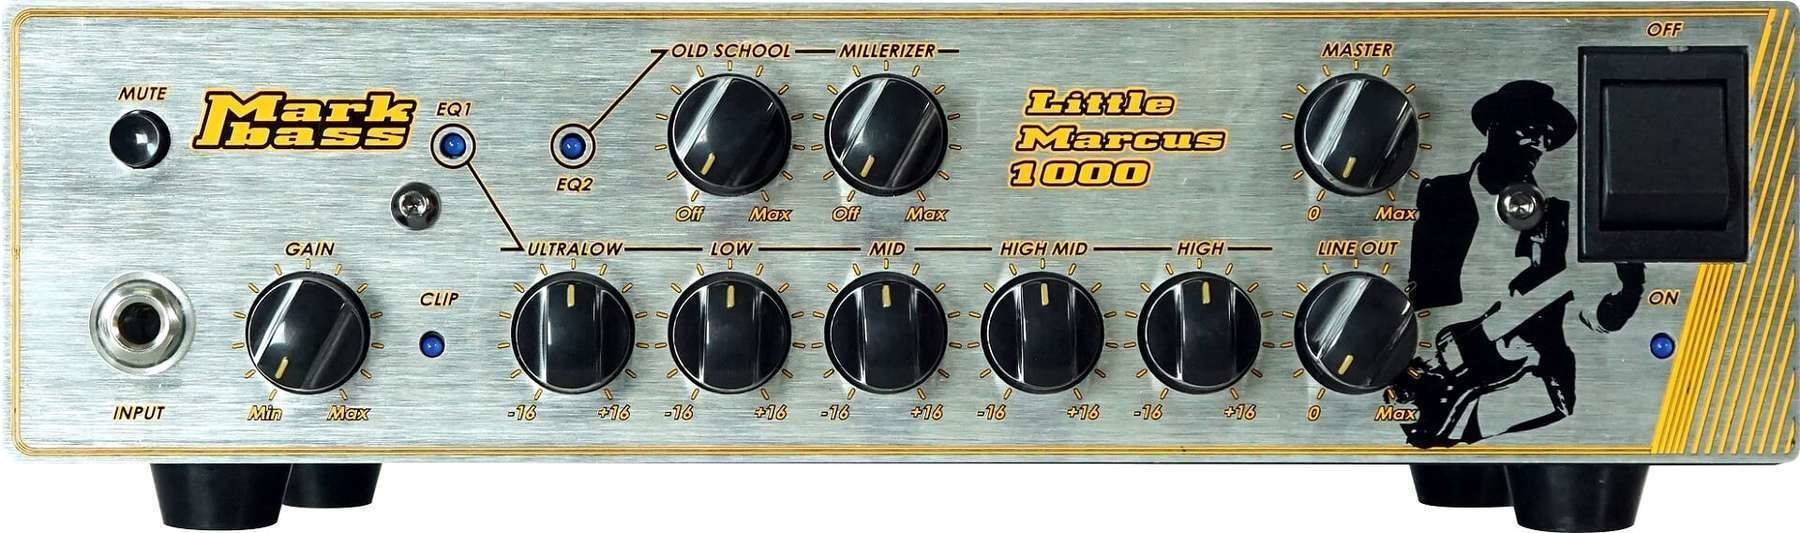 Solid-State Bass Amplifier Markbass Little Marcus 1000